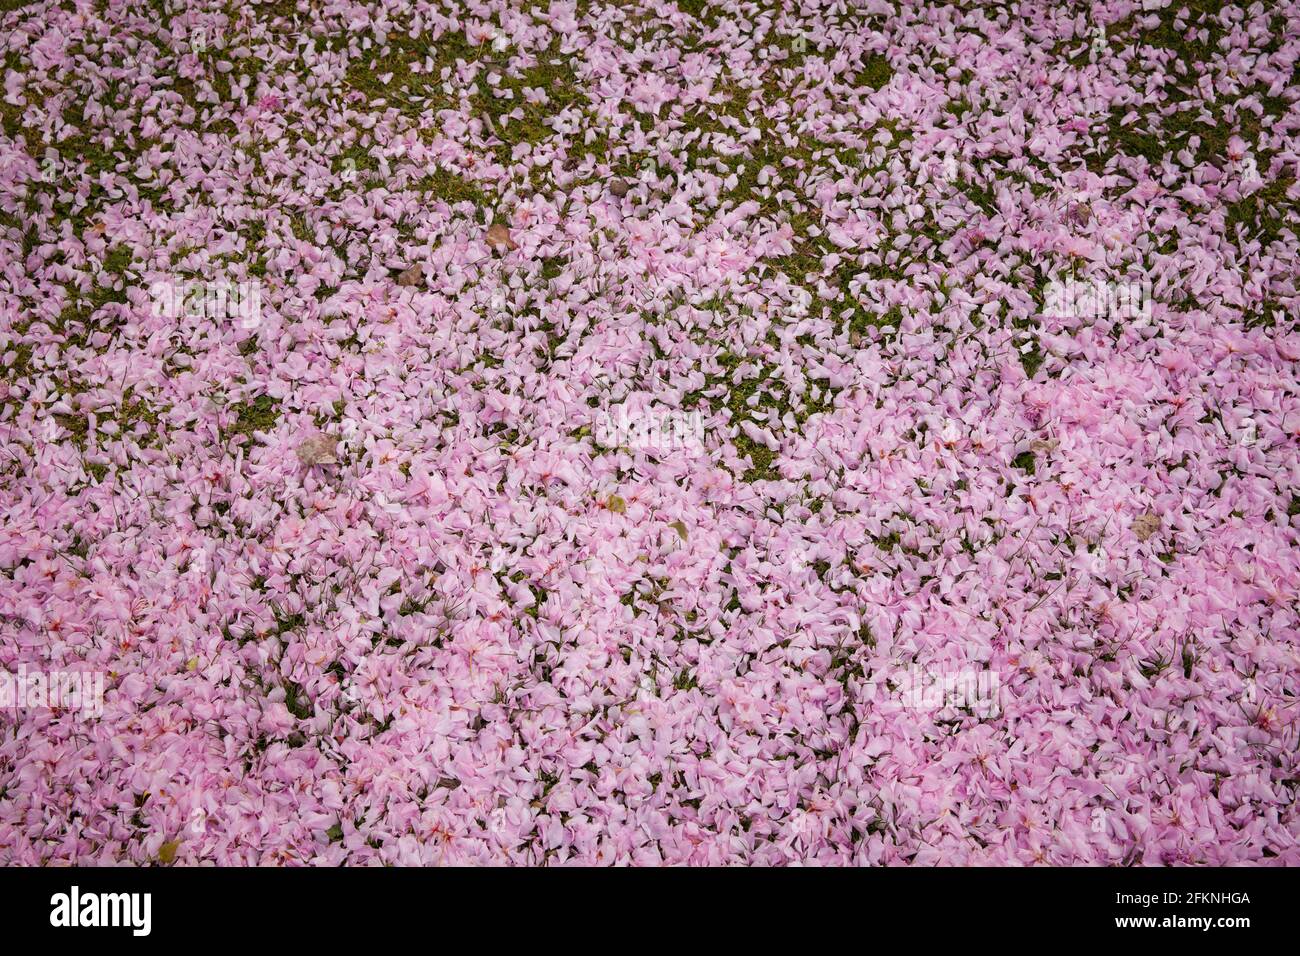 Des pétales soufflés de cerisiers se trouvent sur le sol dans le parc du Rhin dans le quartier Deutz, espace de loisirs local, Cologne, Allemagne. Abgewehte Blu Banque D'Images